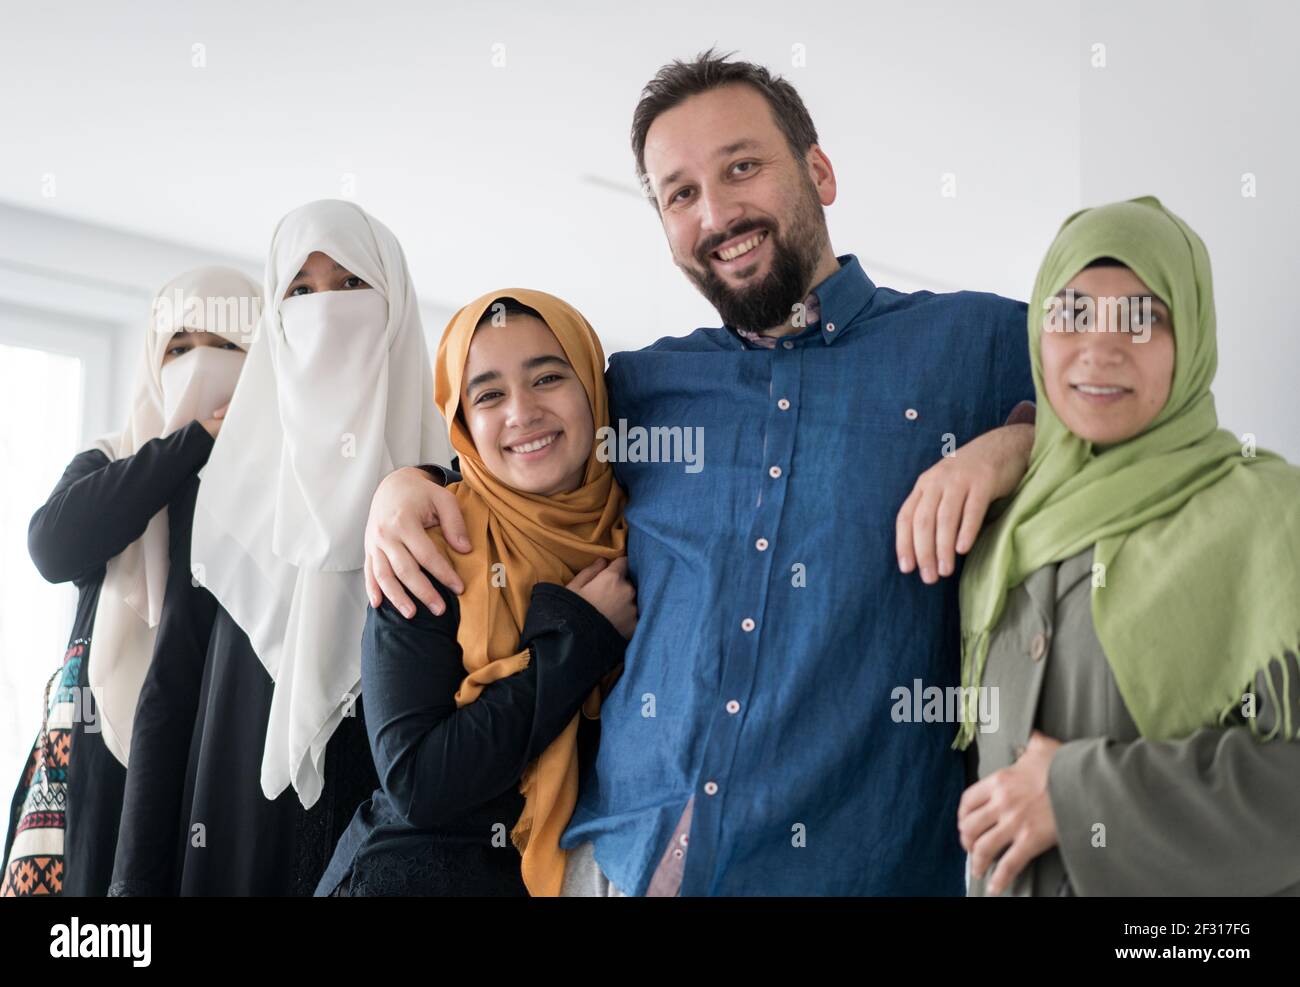 Homme musulman avec 4 femmes portrait , photo de haute qualité Banque D'Images